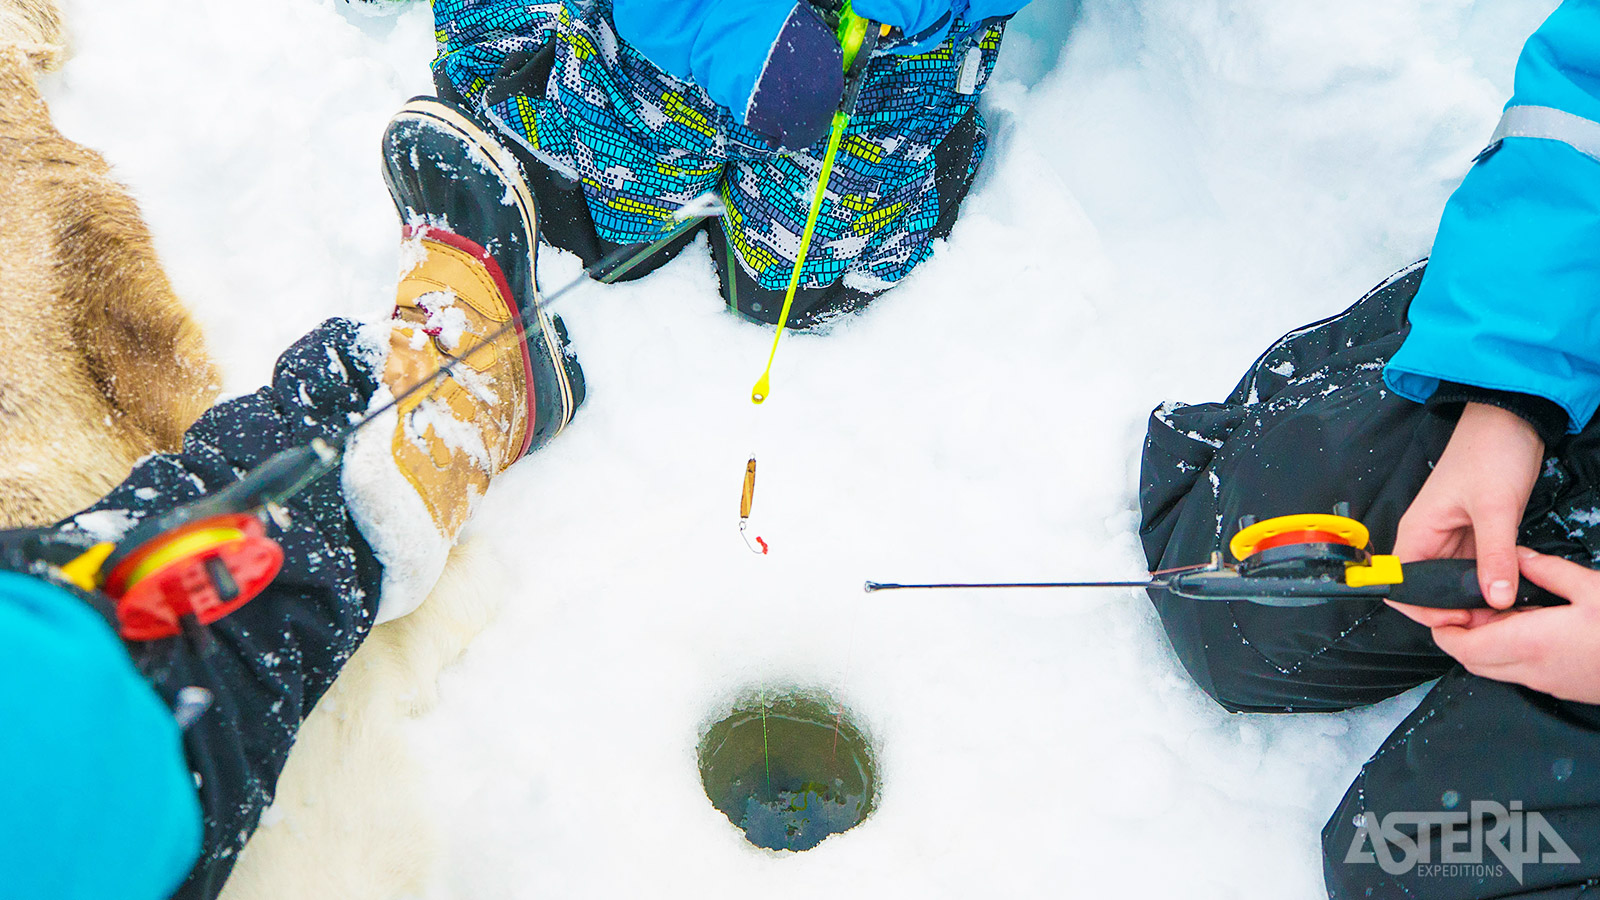 IJsvissen, waarbij men vis probeert te vangen met een vishaak door een gat in het ijs, is eigenlijk kinderspel